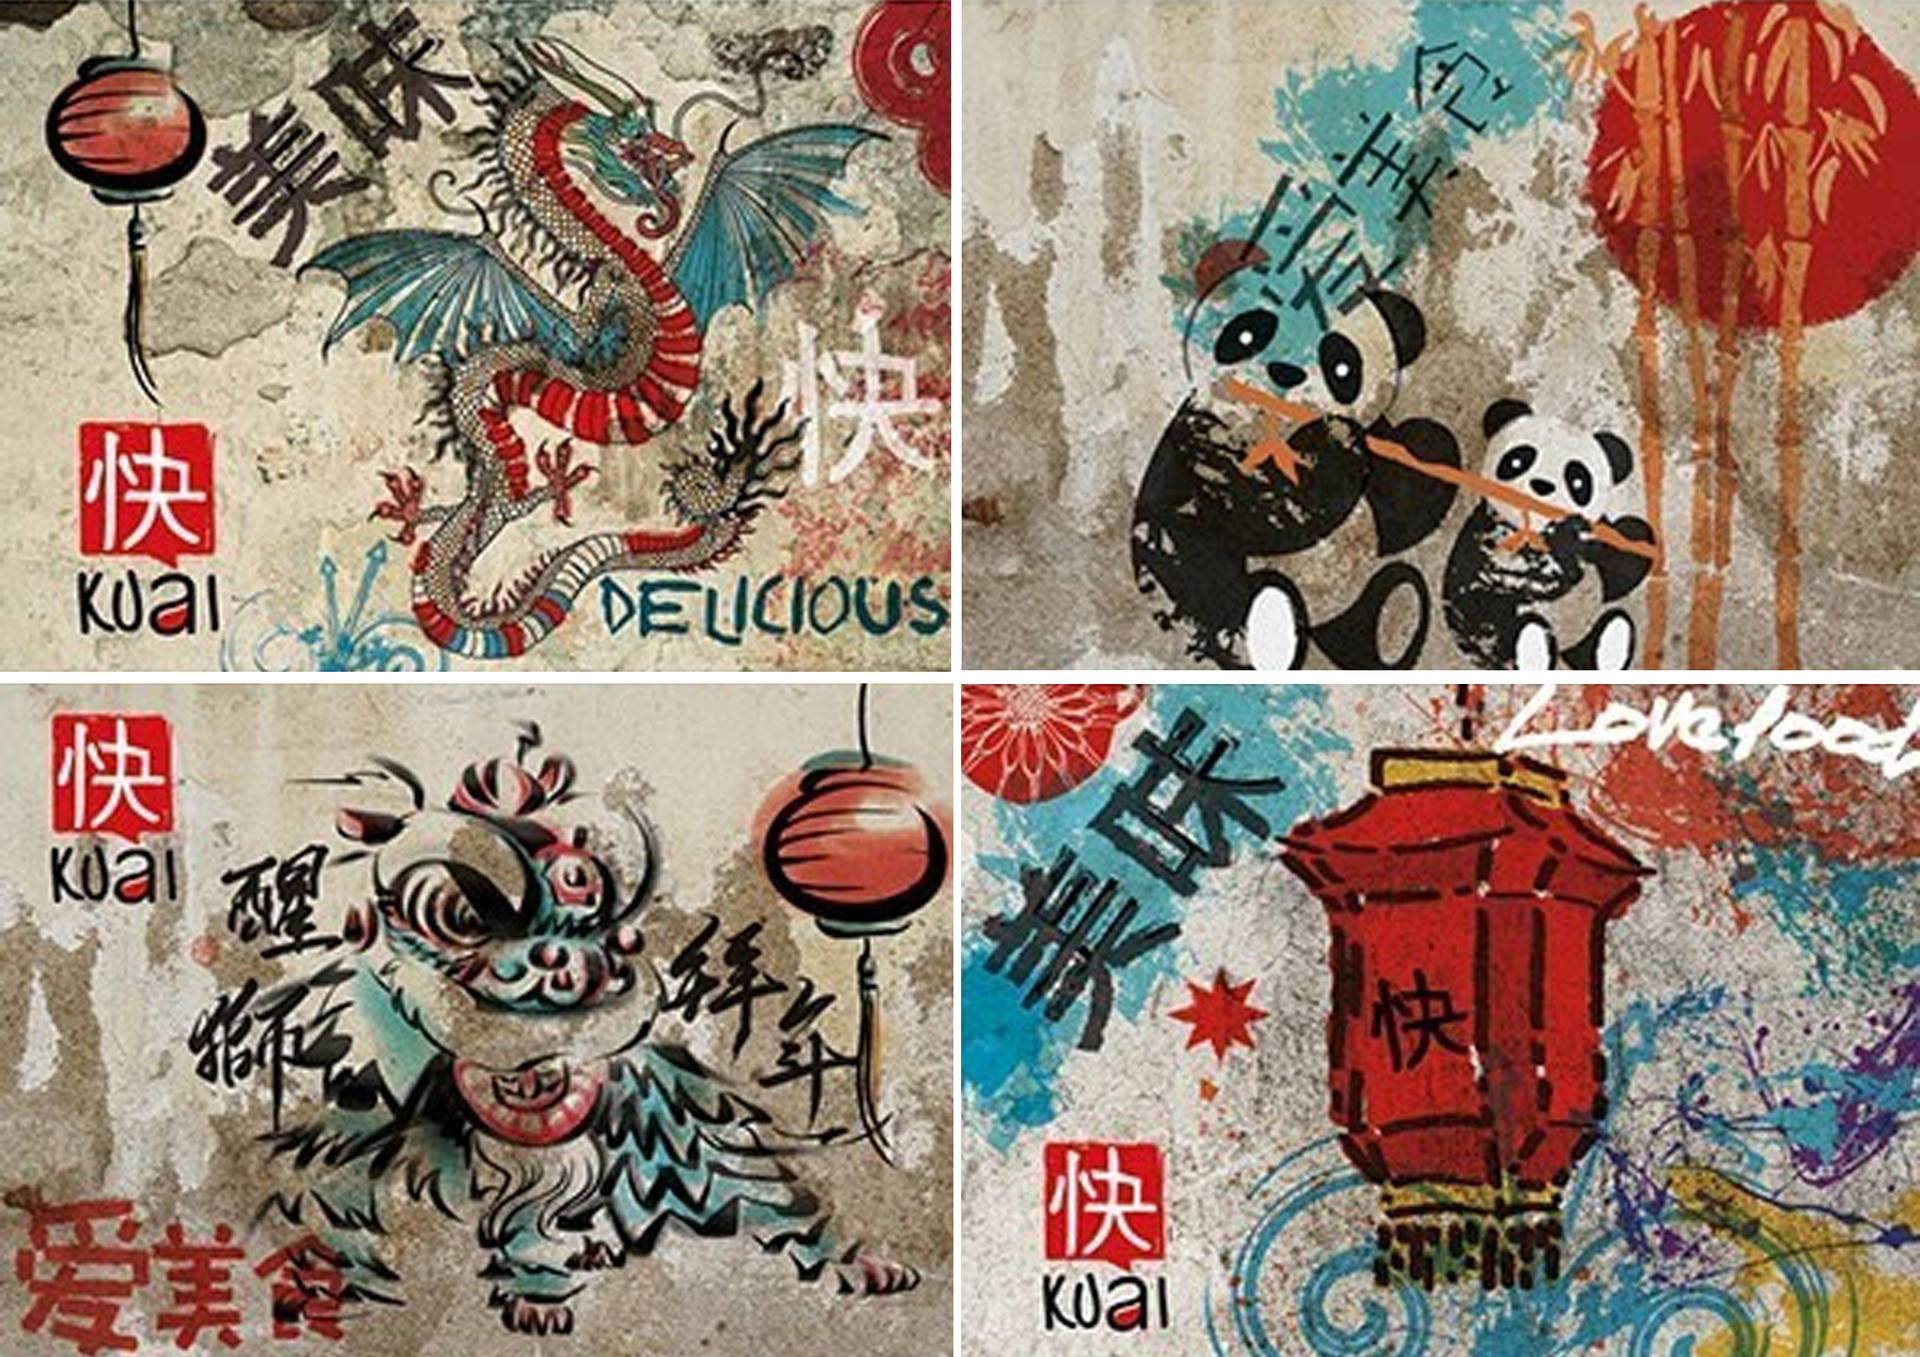 中国"特色"墙上小广告,以龙,熊猫,茶壶,灯笼,舞狮等元素进行街头涂鸦